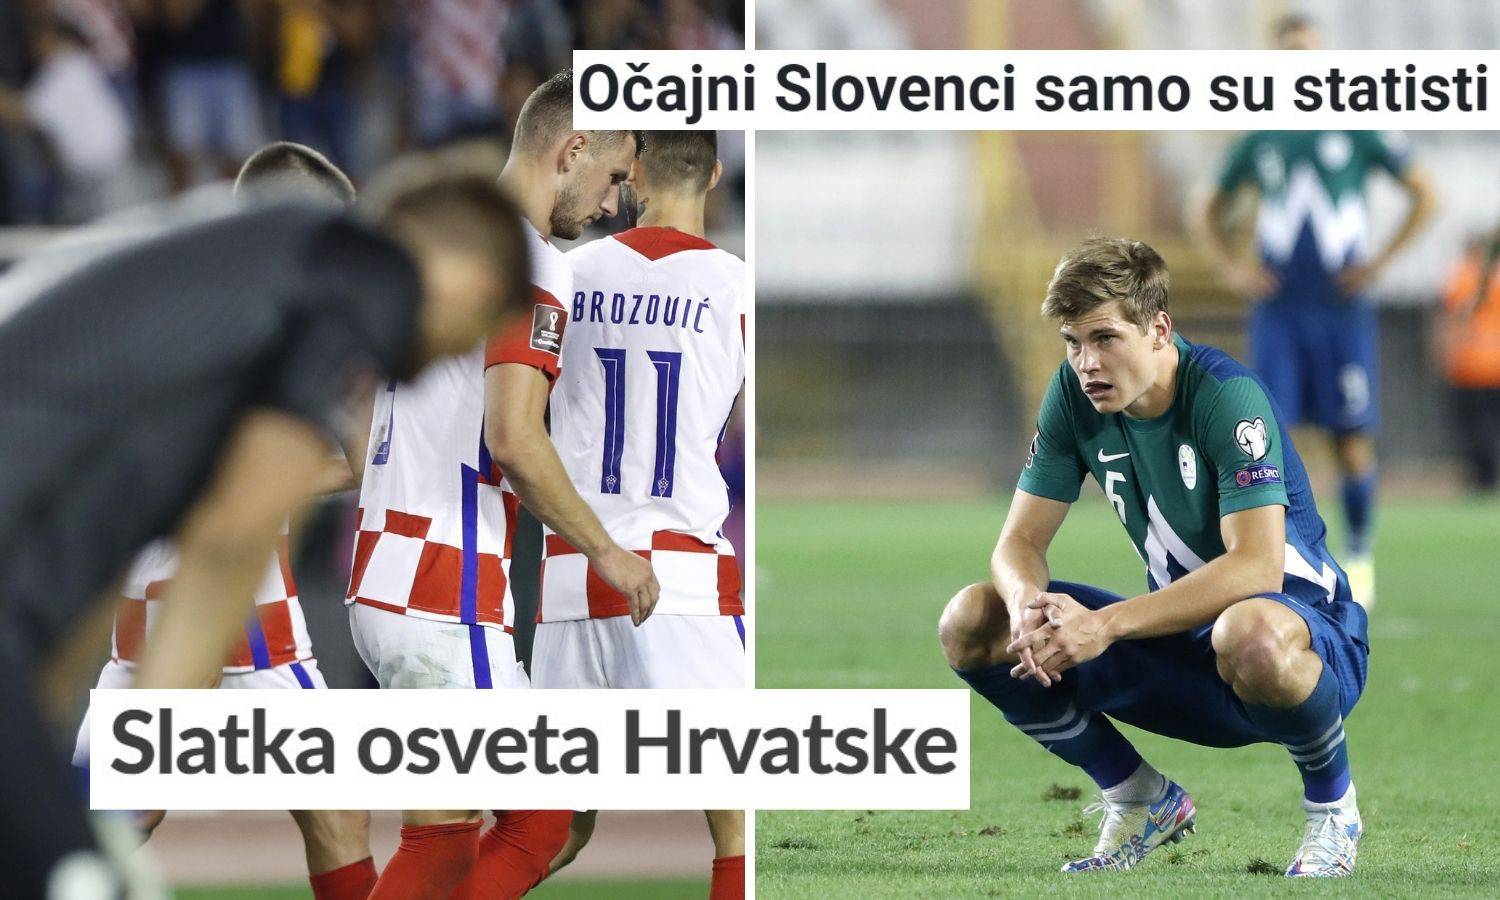 Slovenski mediji: Hrvati su nam vratili s kamatama. Očajni smo!